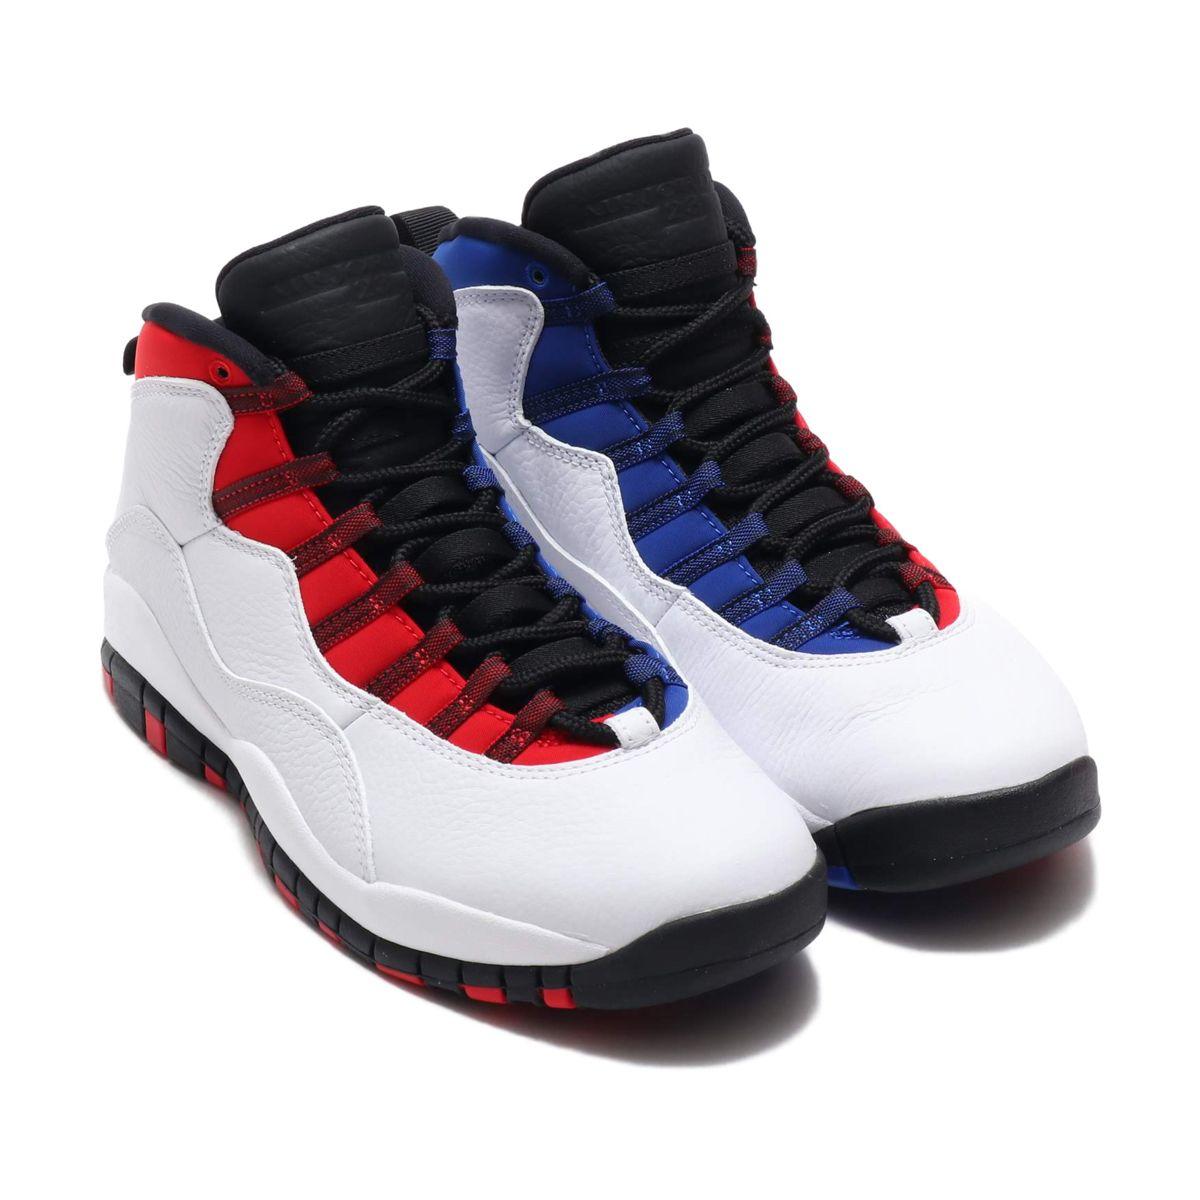 Blue and Red Jordan Logo - atmos pink: NIKE AIR JORDAN 10 RETRO (nostalgic Nike Air Jordan 10 ...